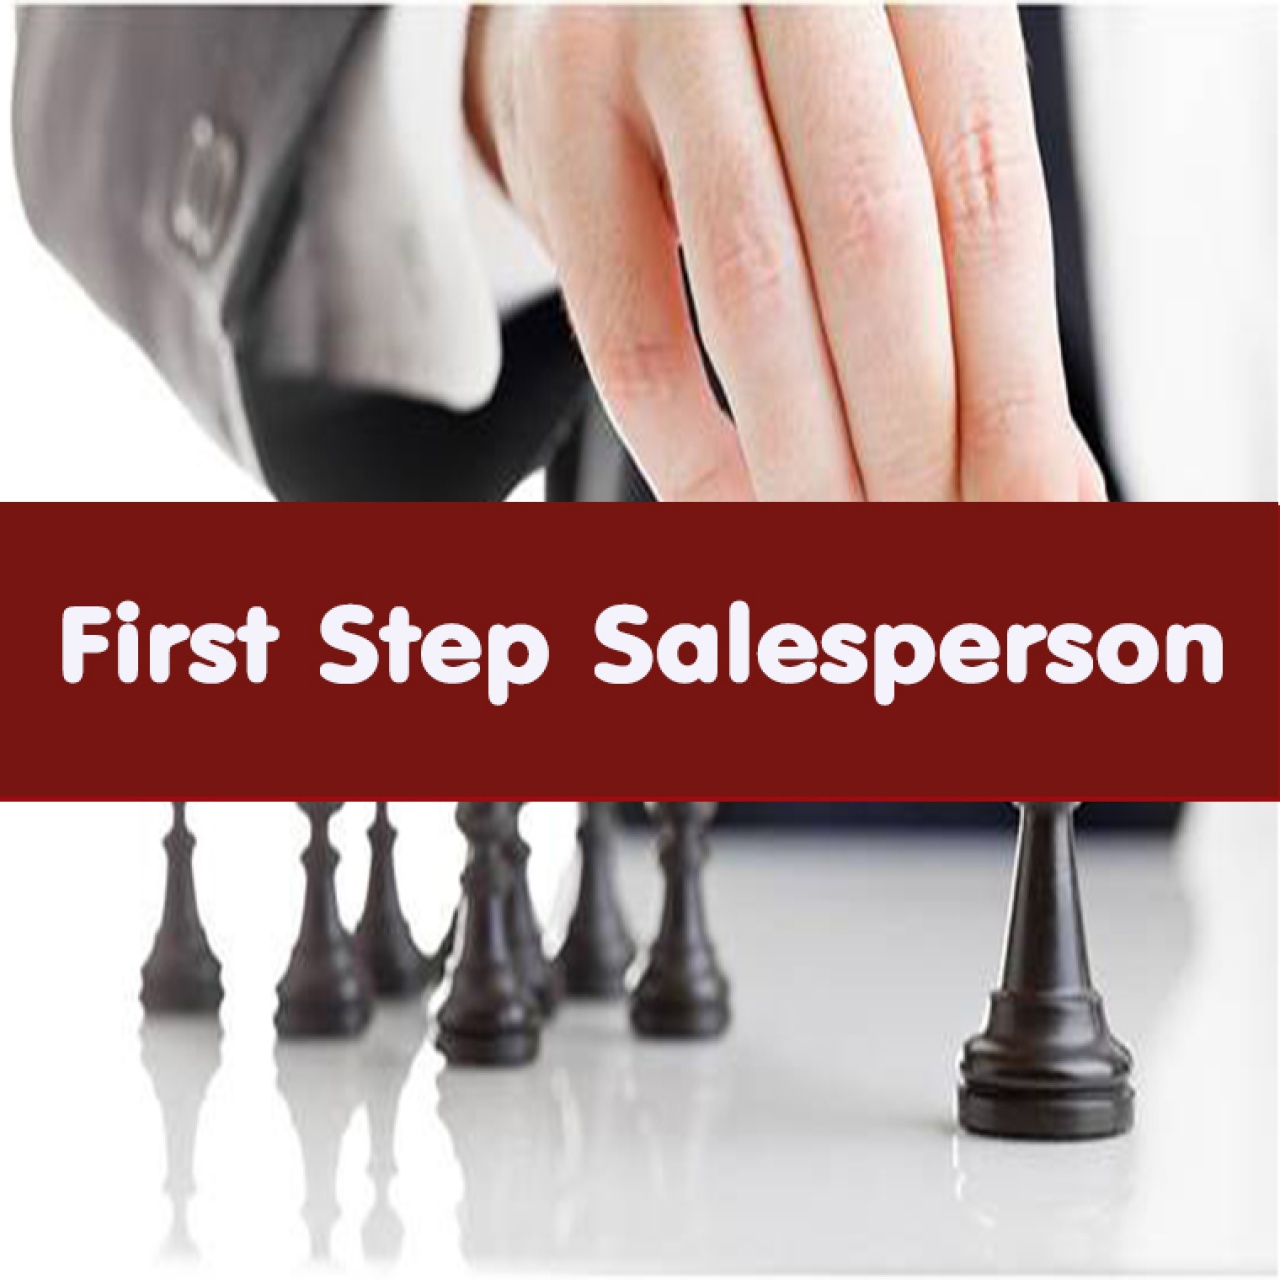 First Step Salesperson รวบรวมสุดยอดเทคนิคการขายที่พนักงานขายมือใหม่ควรรู้